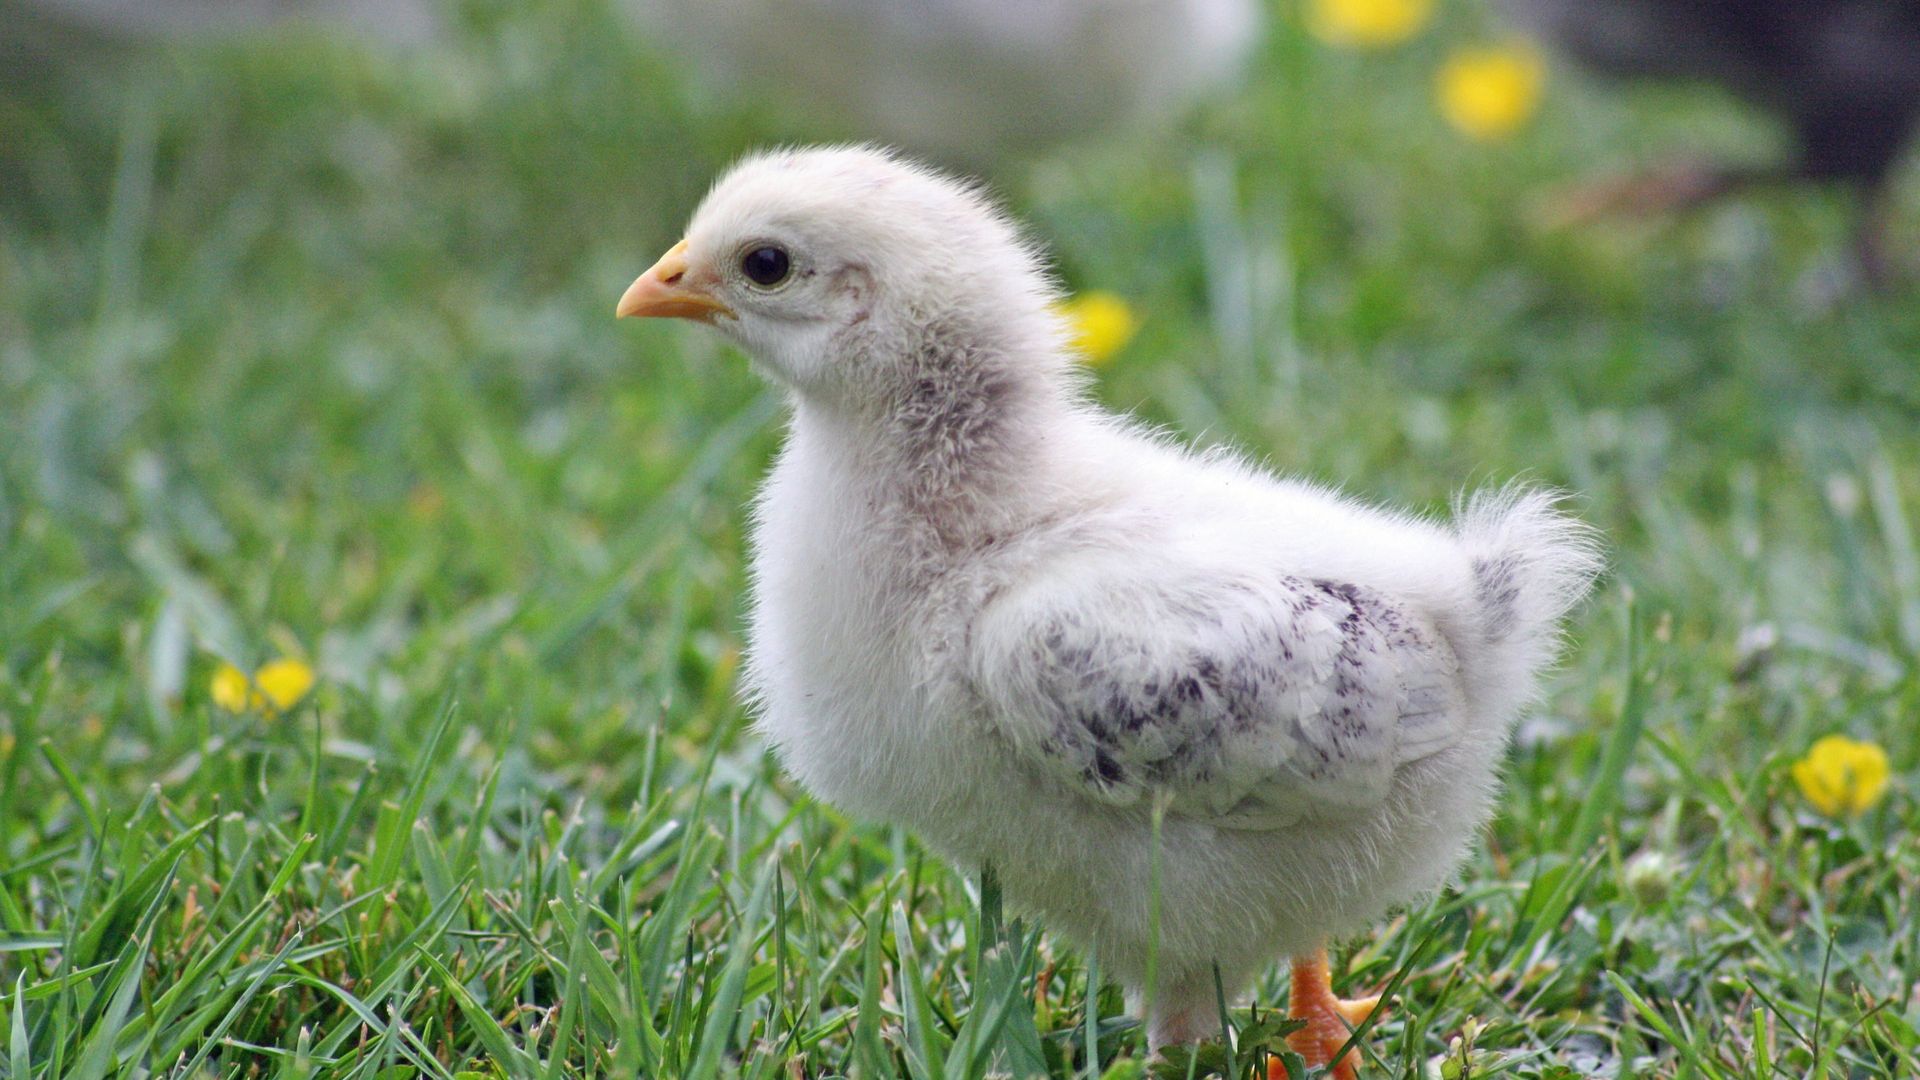 Wallpaper Chick, baby bird, walk, grass field